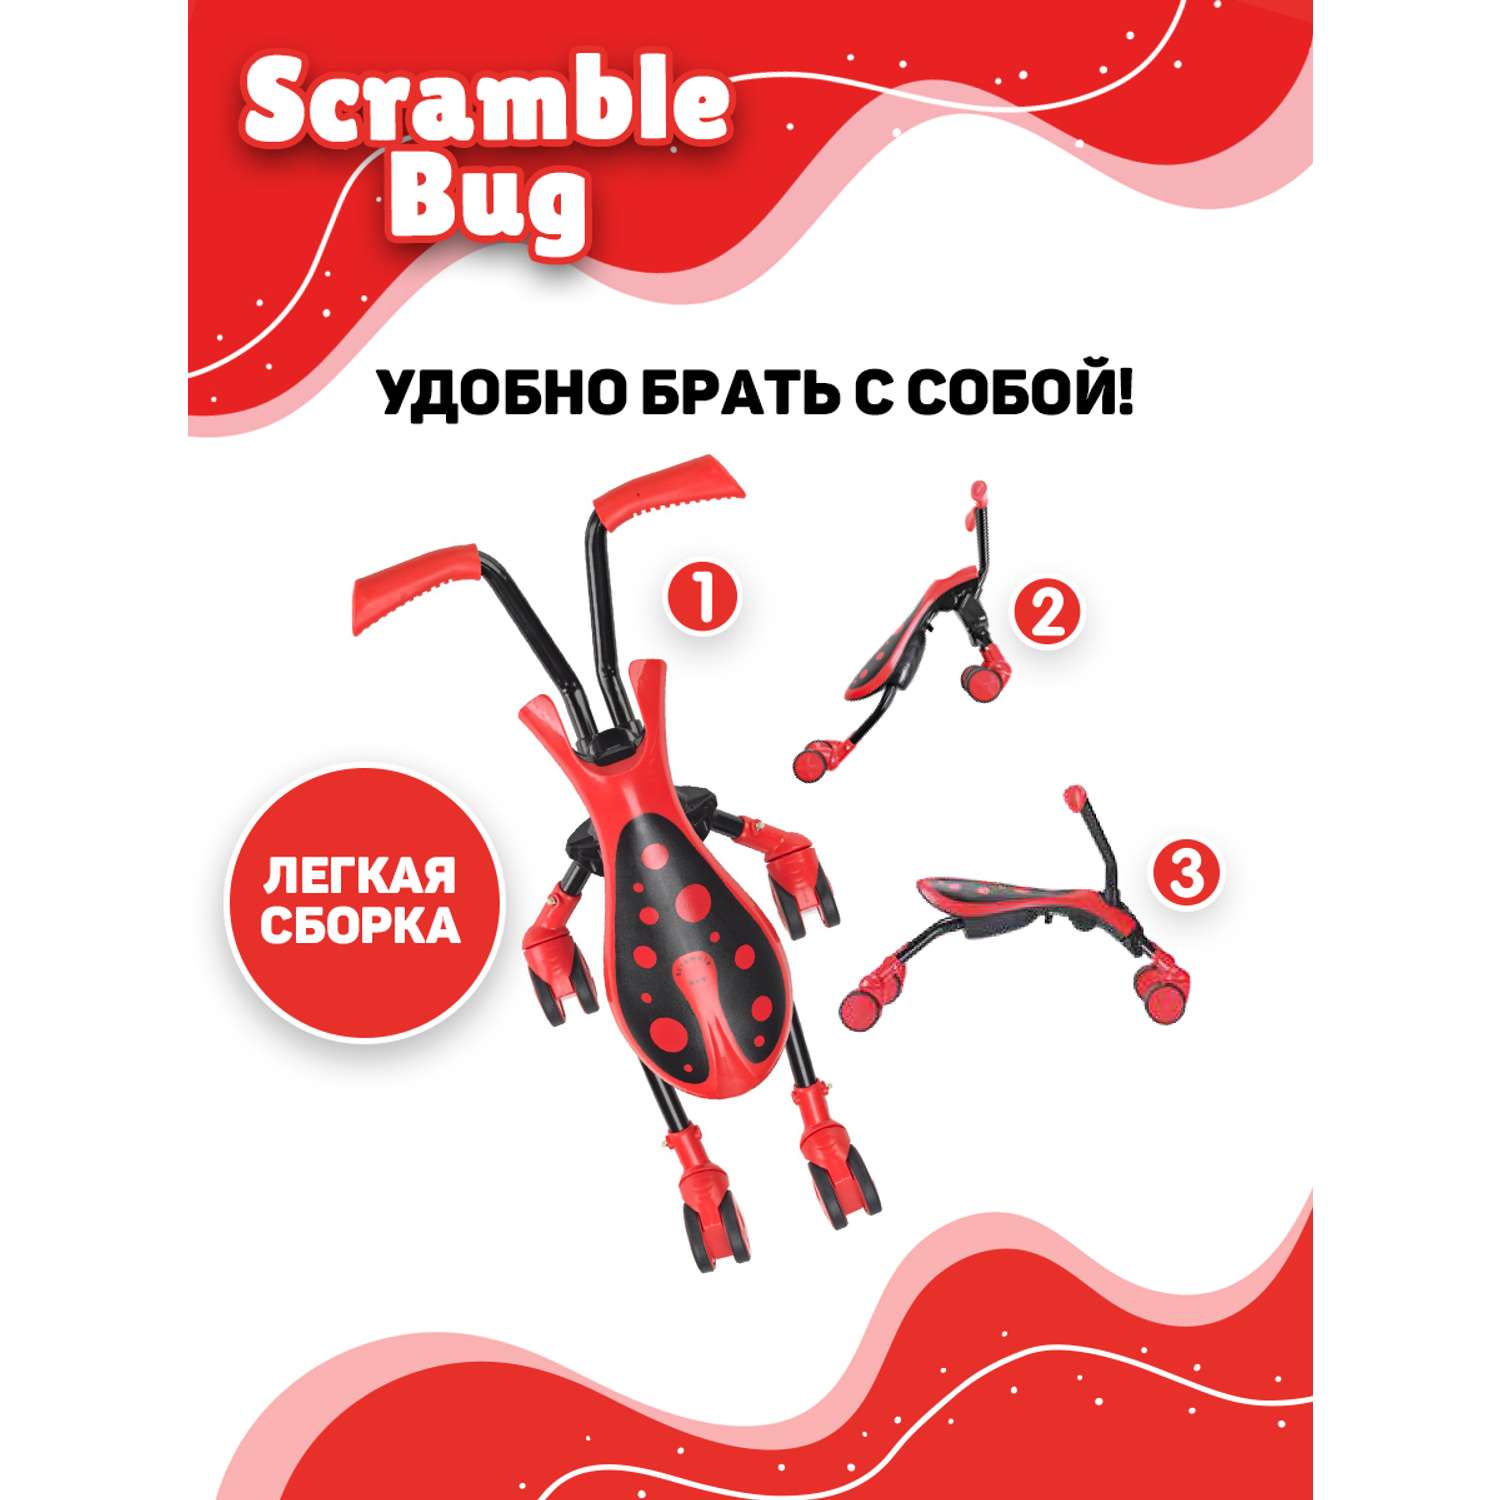 Беговел Scramble Bug трансформер четырехколесный Жук - фото 6